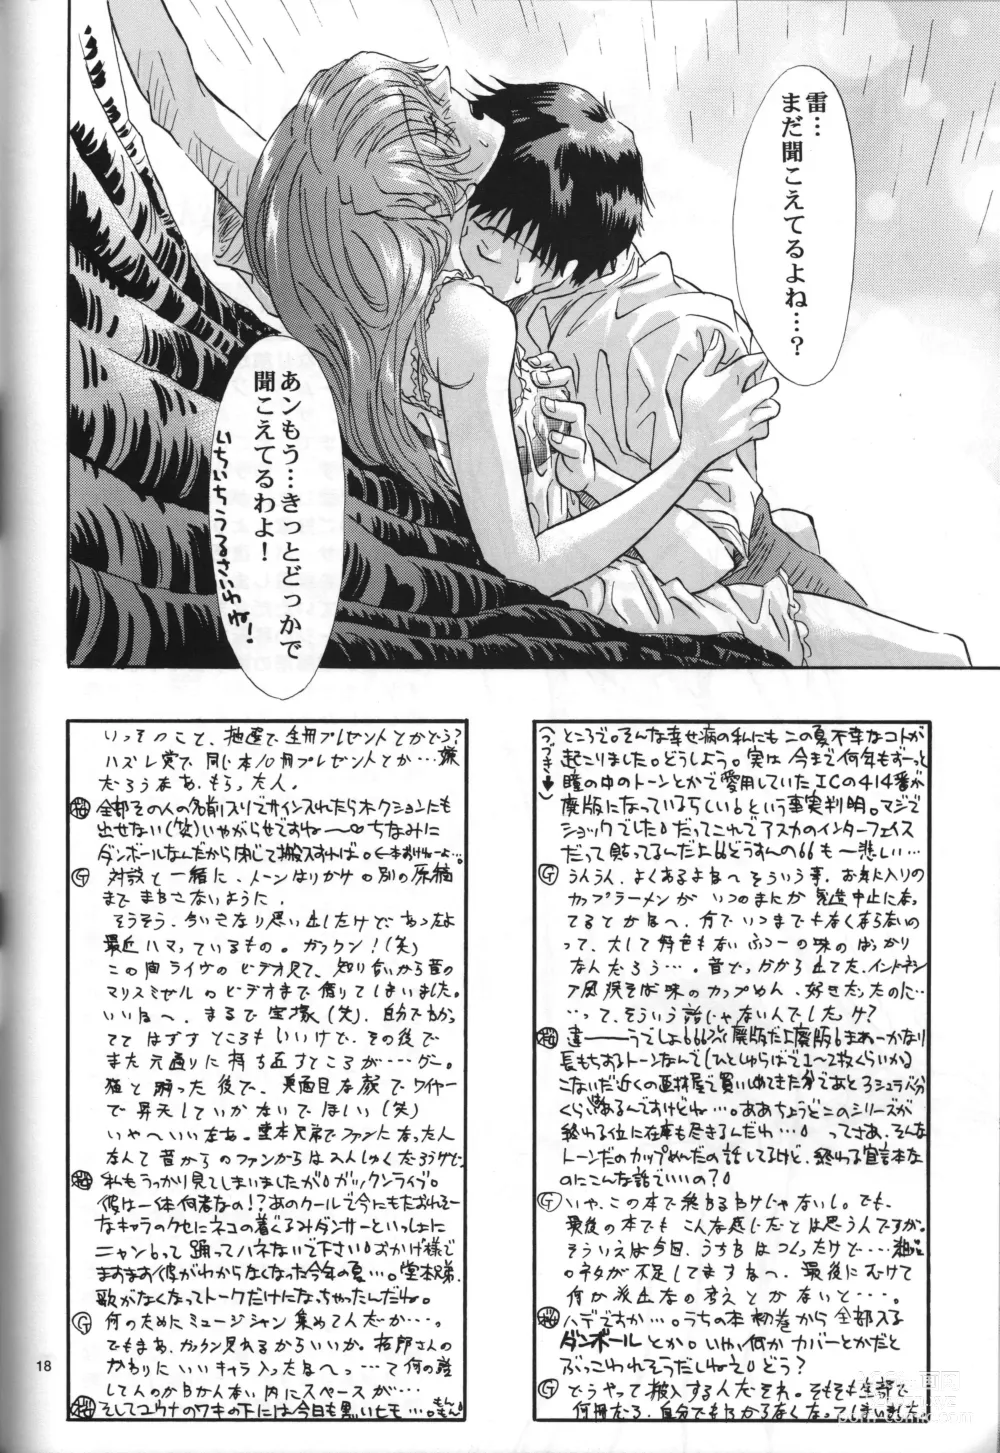 Page 18 of doujinshi Air